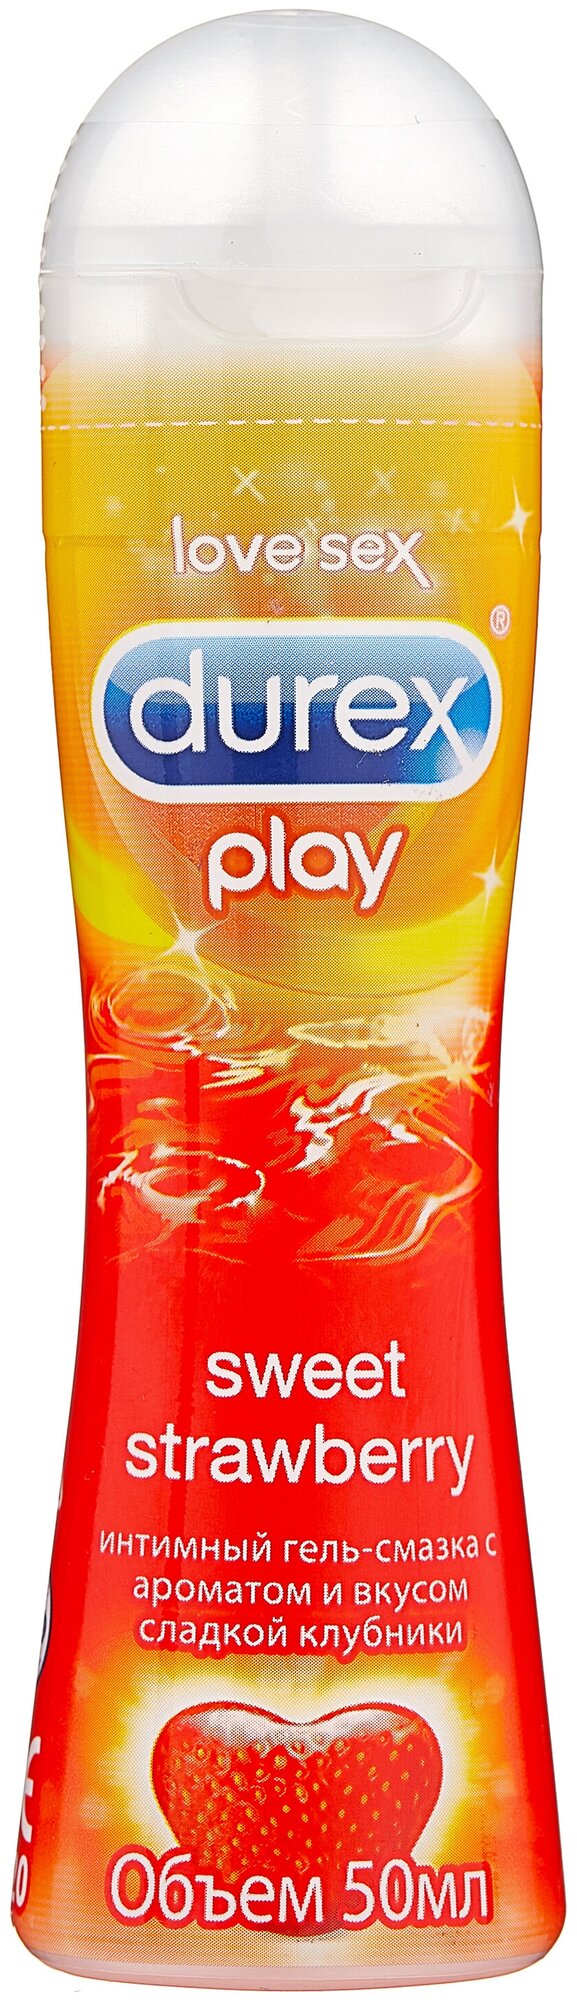 Крем-смазка Durex Play Sweet Strawberry с ароматом сладкой клубники